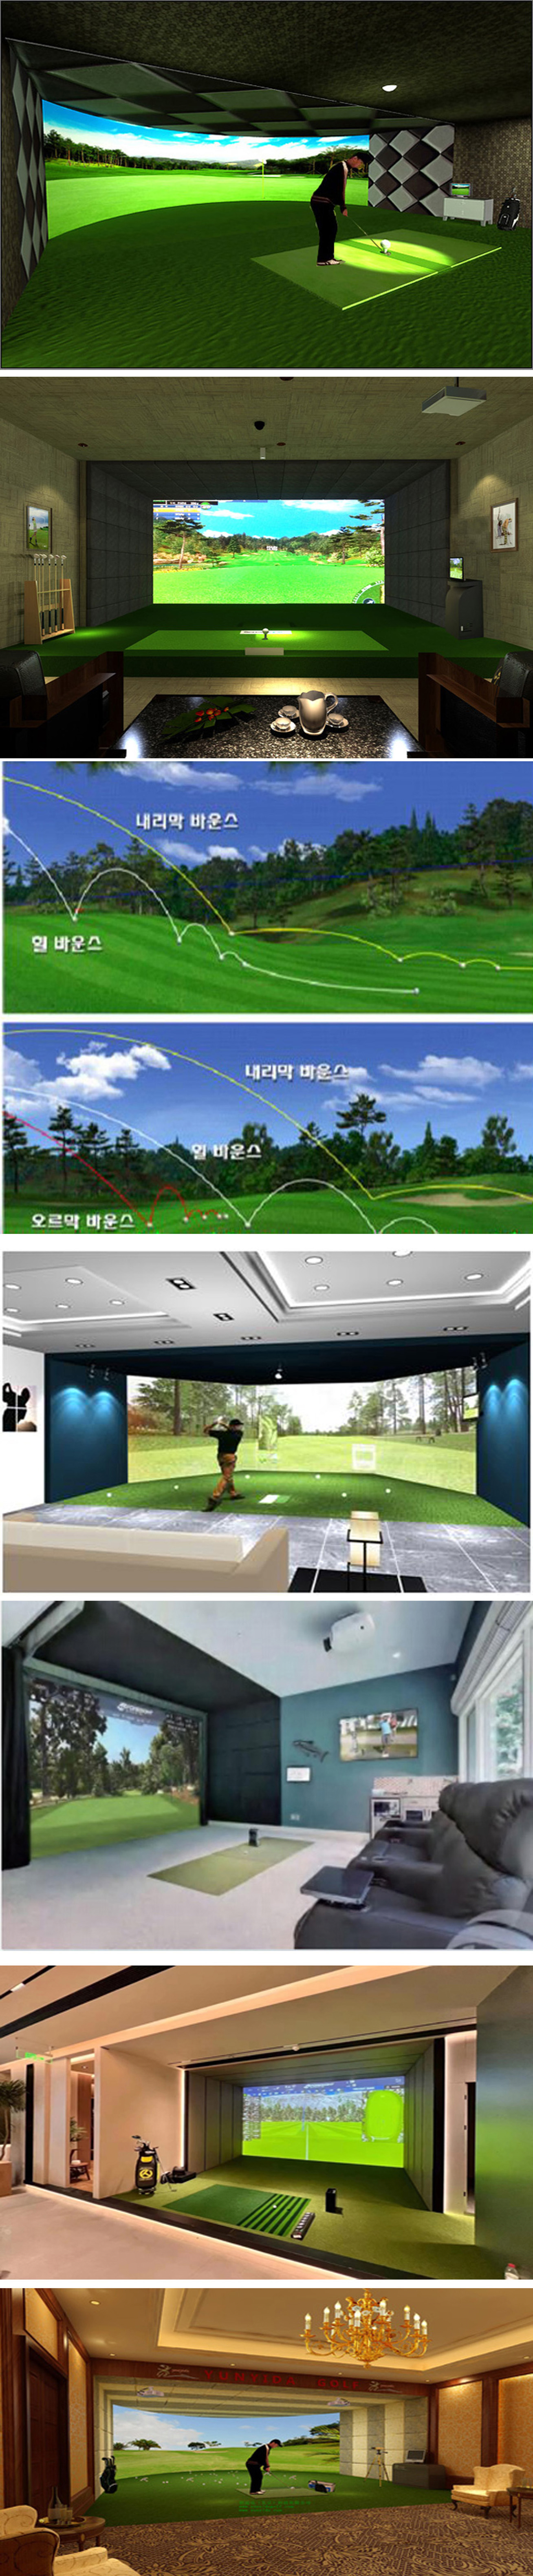 模拟室内高尔夫系统软件 01.jpg